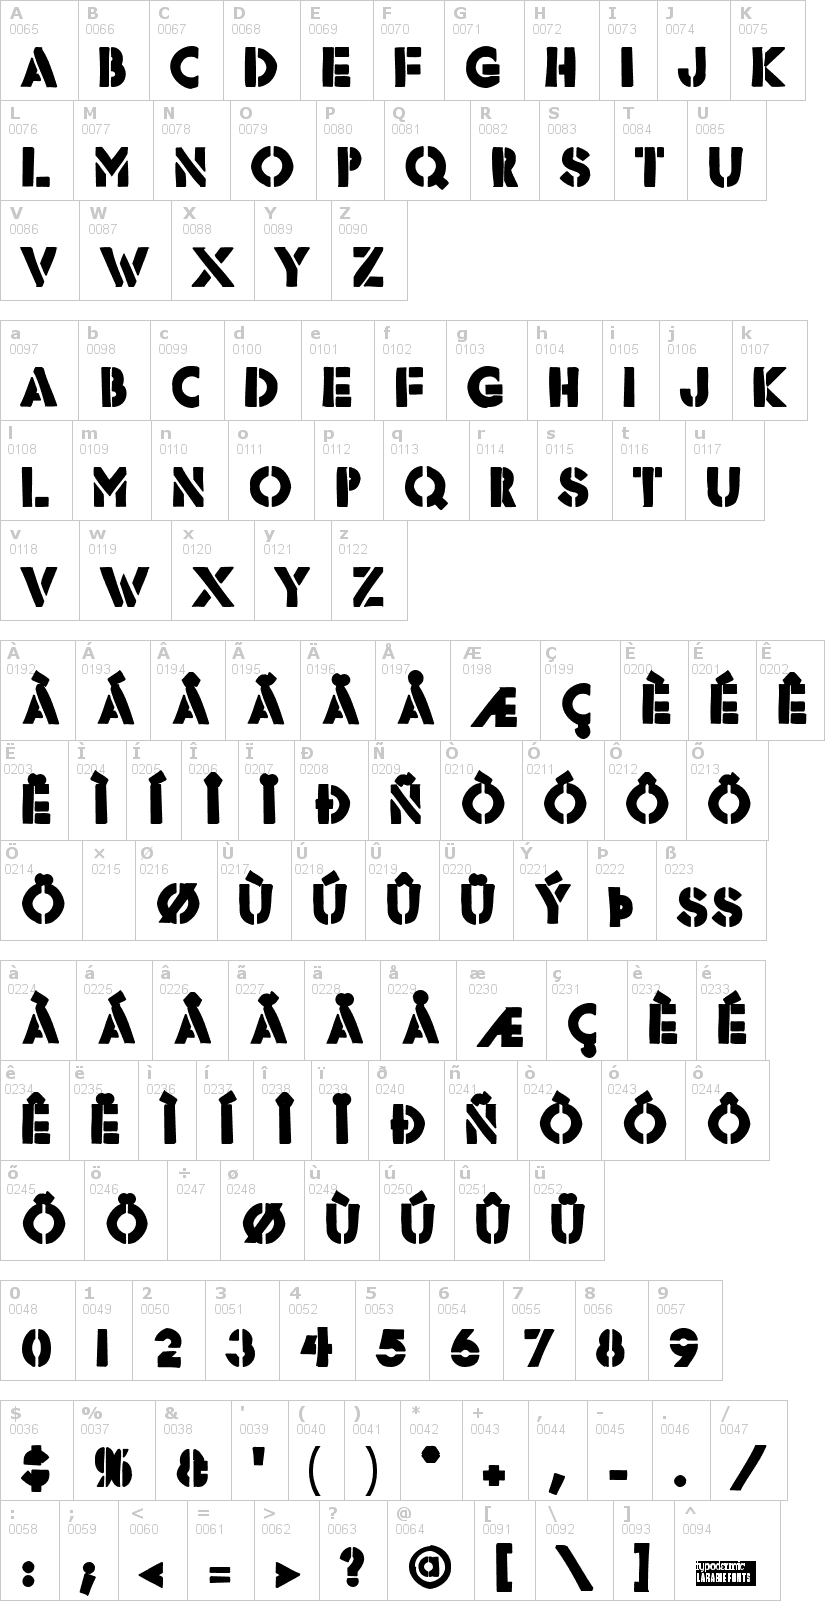 Lettere dell'alfabeto del font rafika con le quali è possibile realizzare adesivi prespaziati